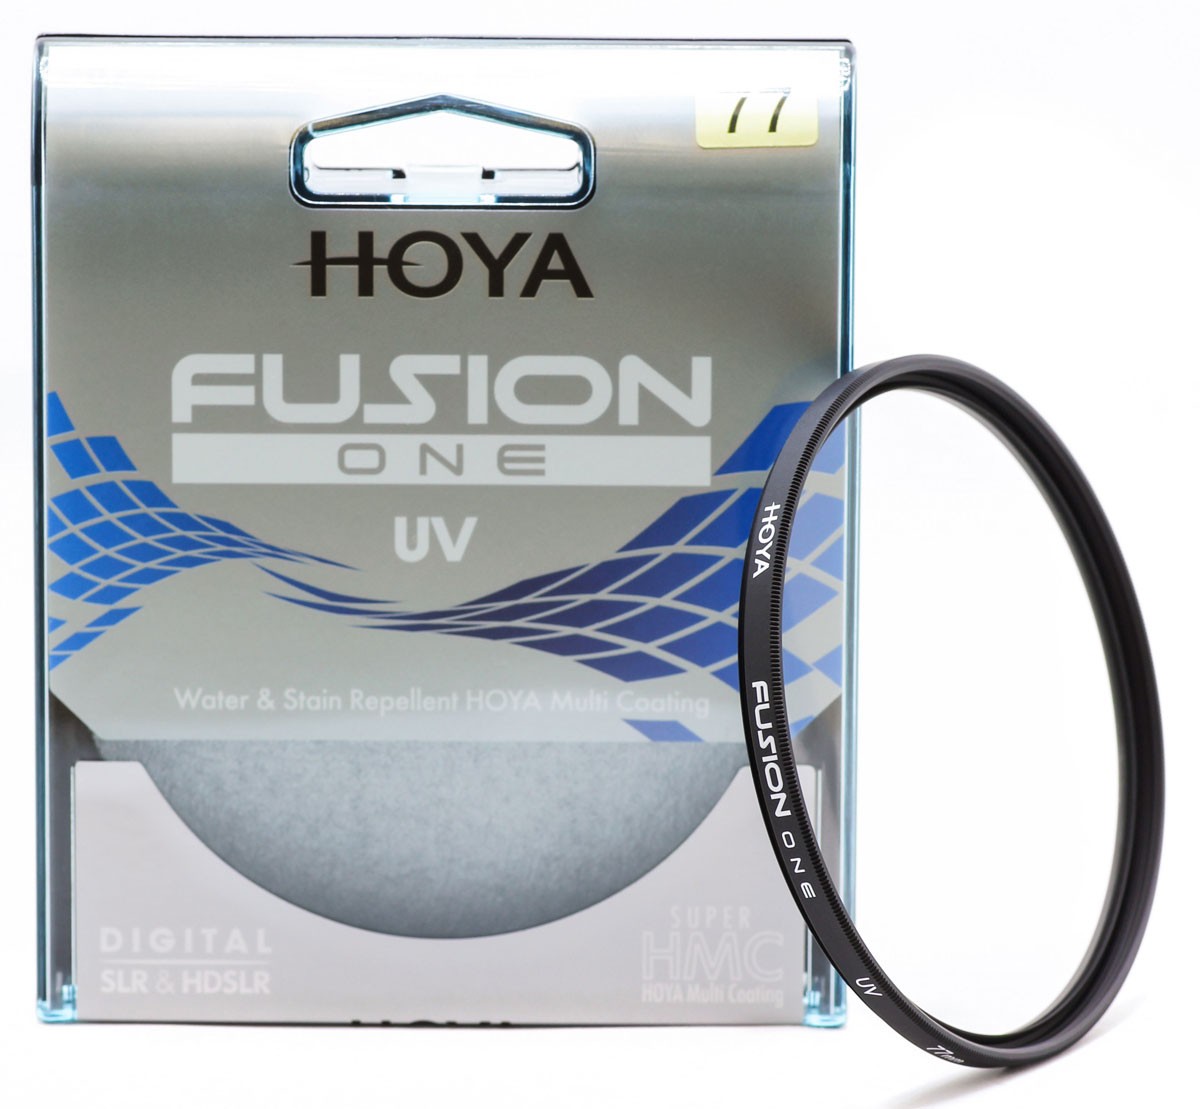 Hoya fusion one uv